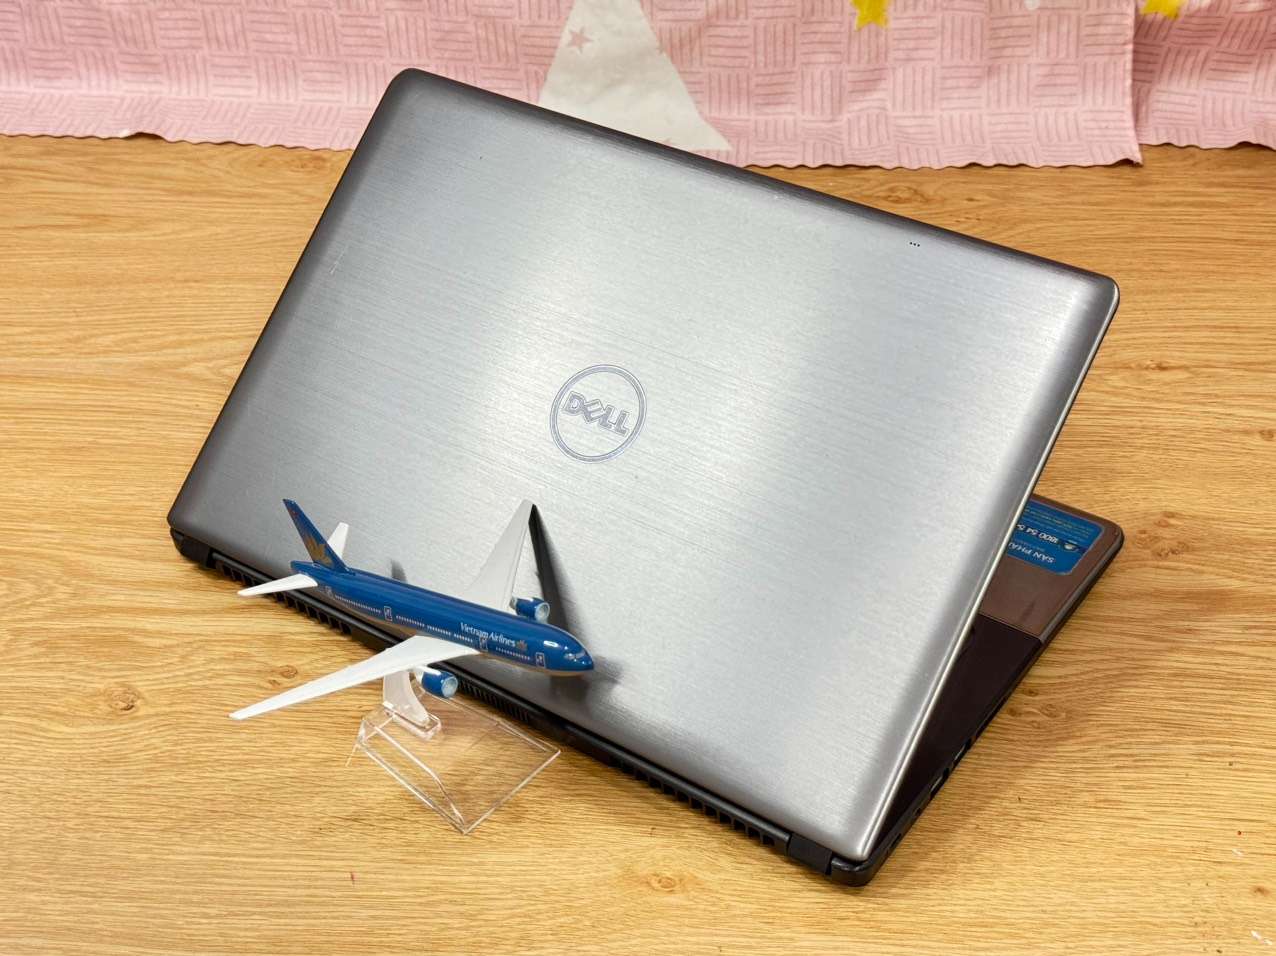 Dell-vostro-5480-core-i7-ram-8gb-ssd-250gb-vga-roi-laptop-cu-gia-re-laptopthienan